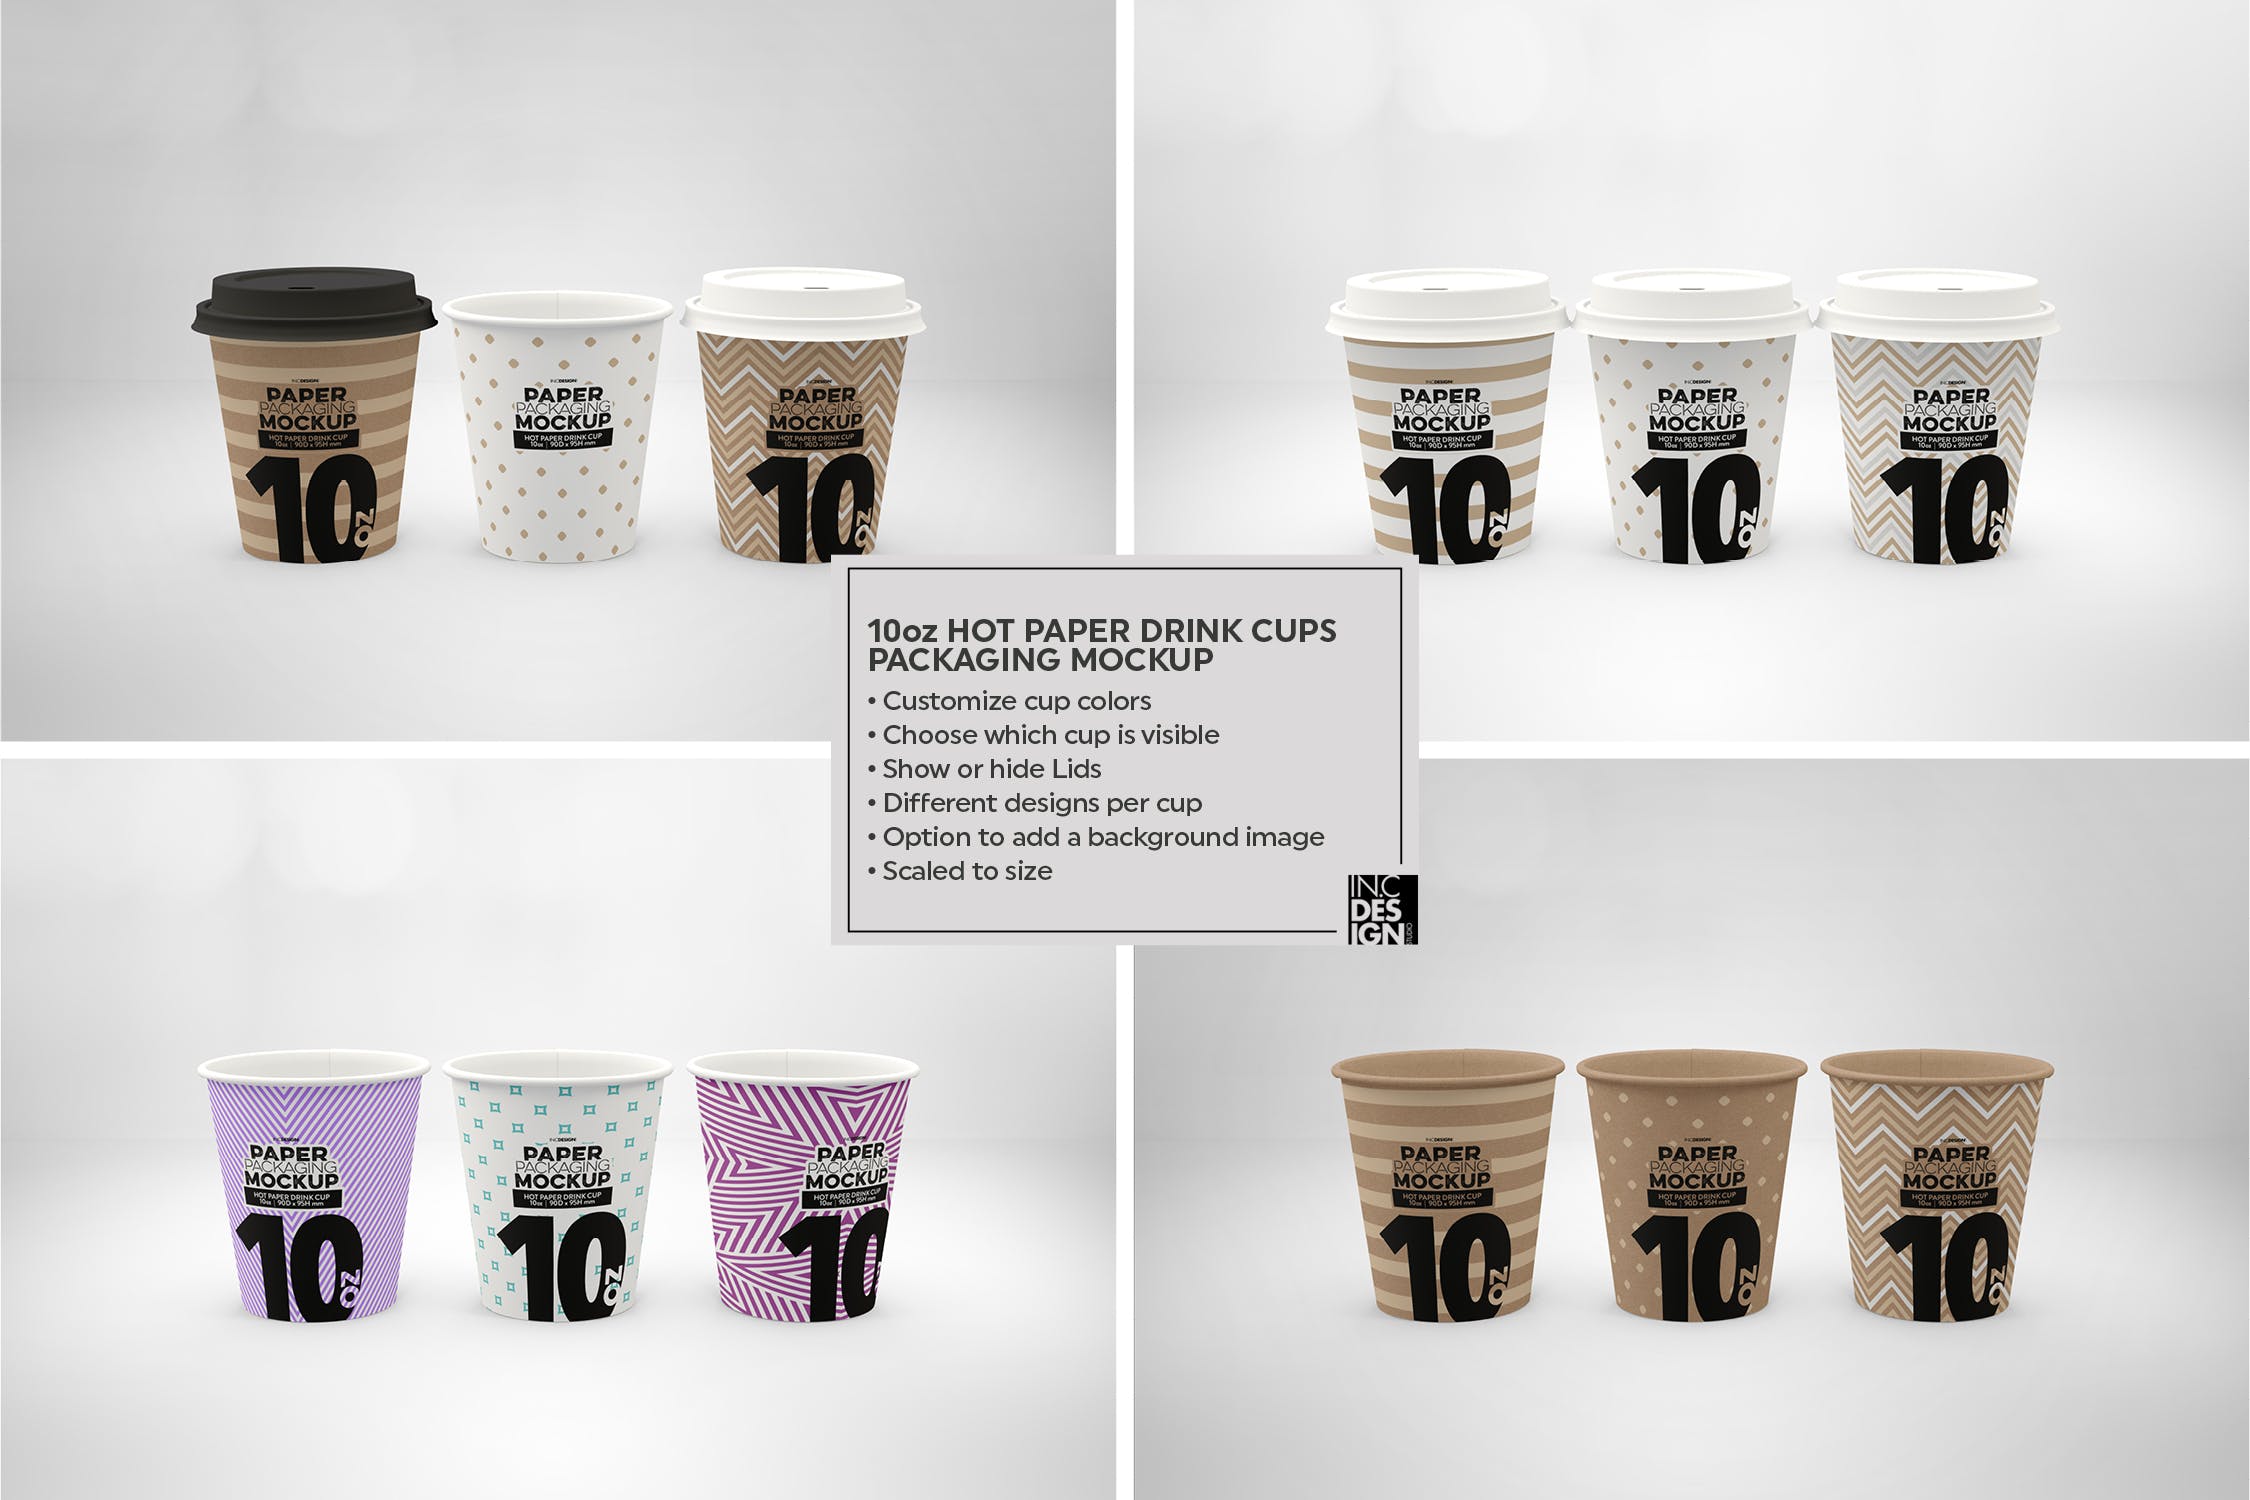 热饮一次性纸杯外观设计素材库精选 Paper Hot Drink Cups Packaging Mockup插图(13)